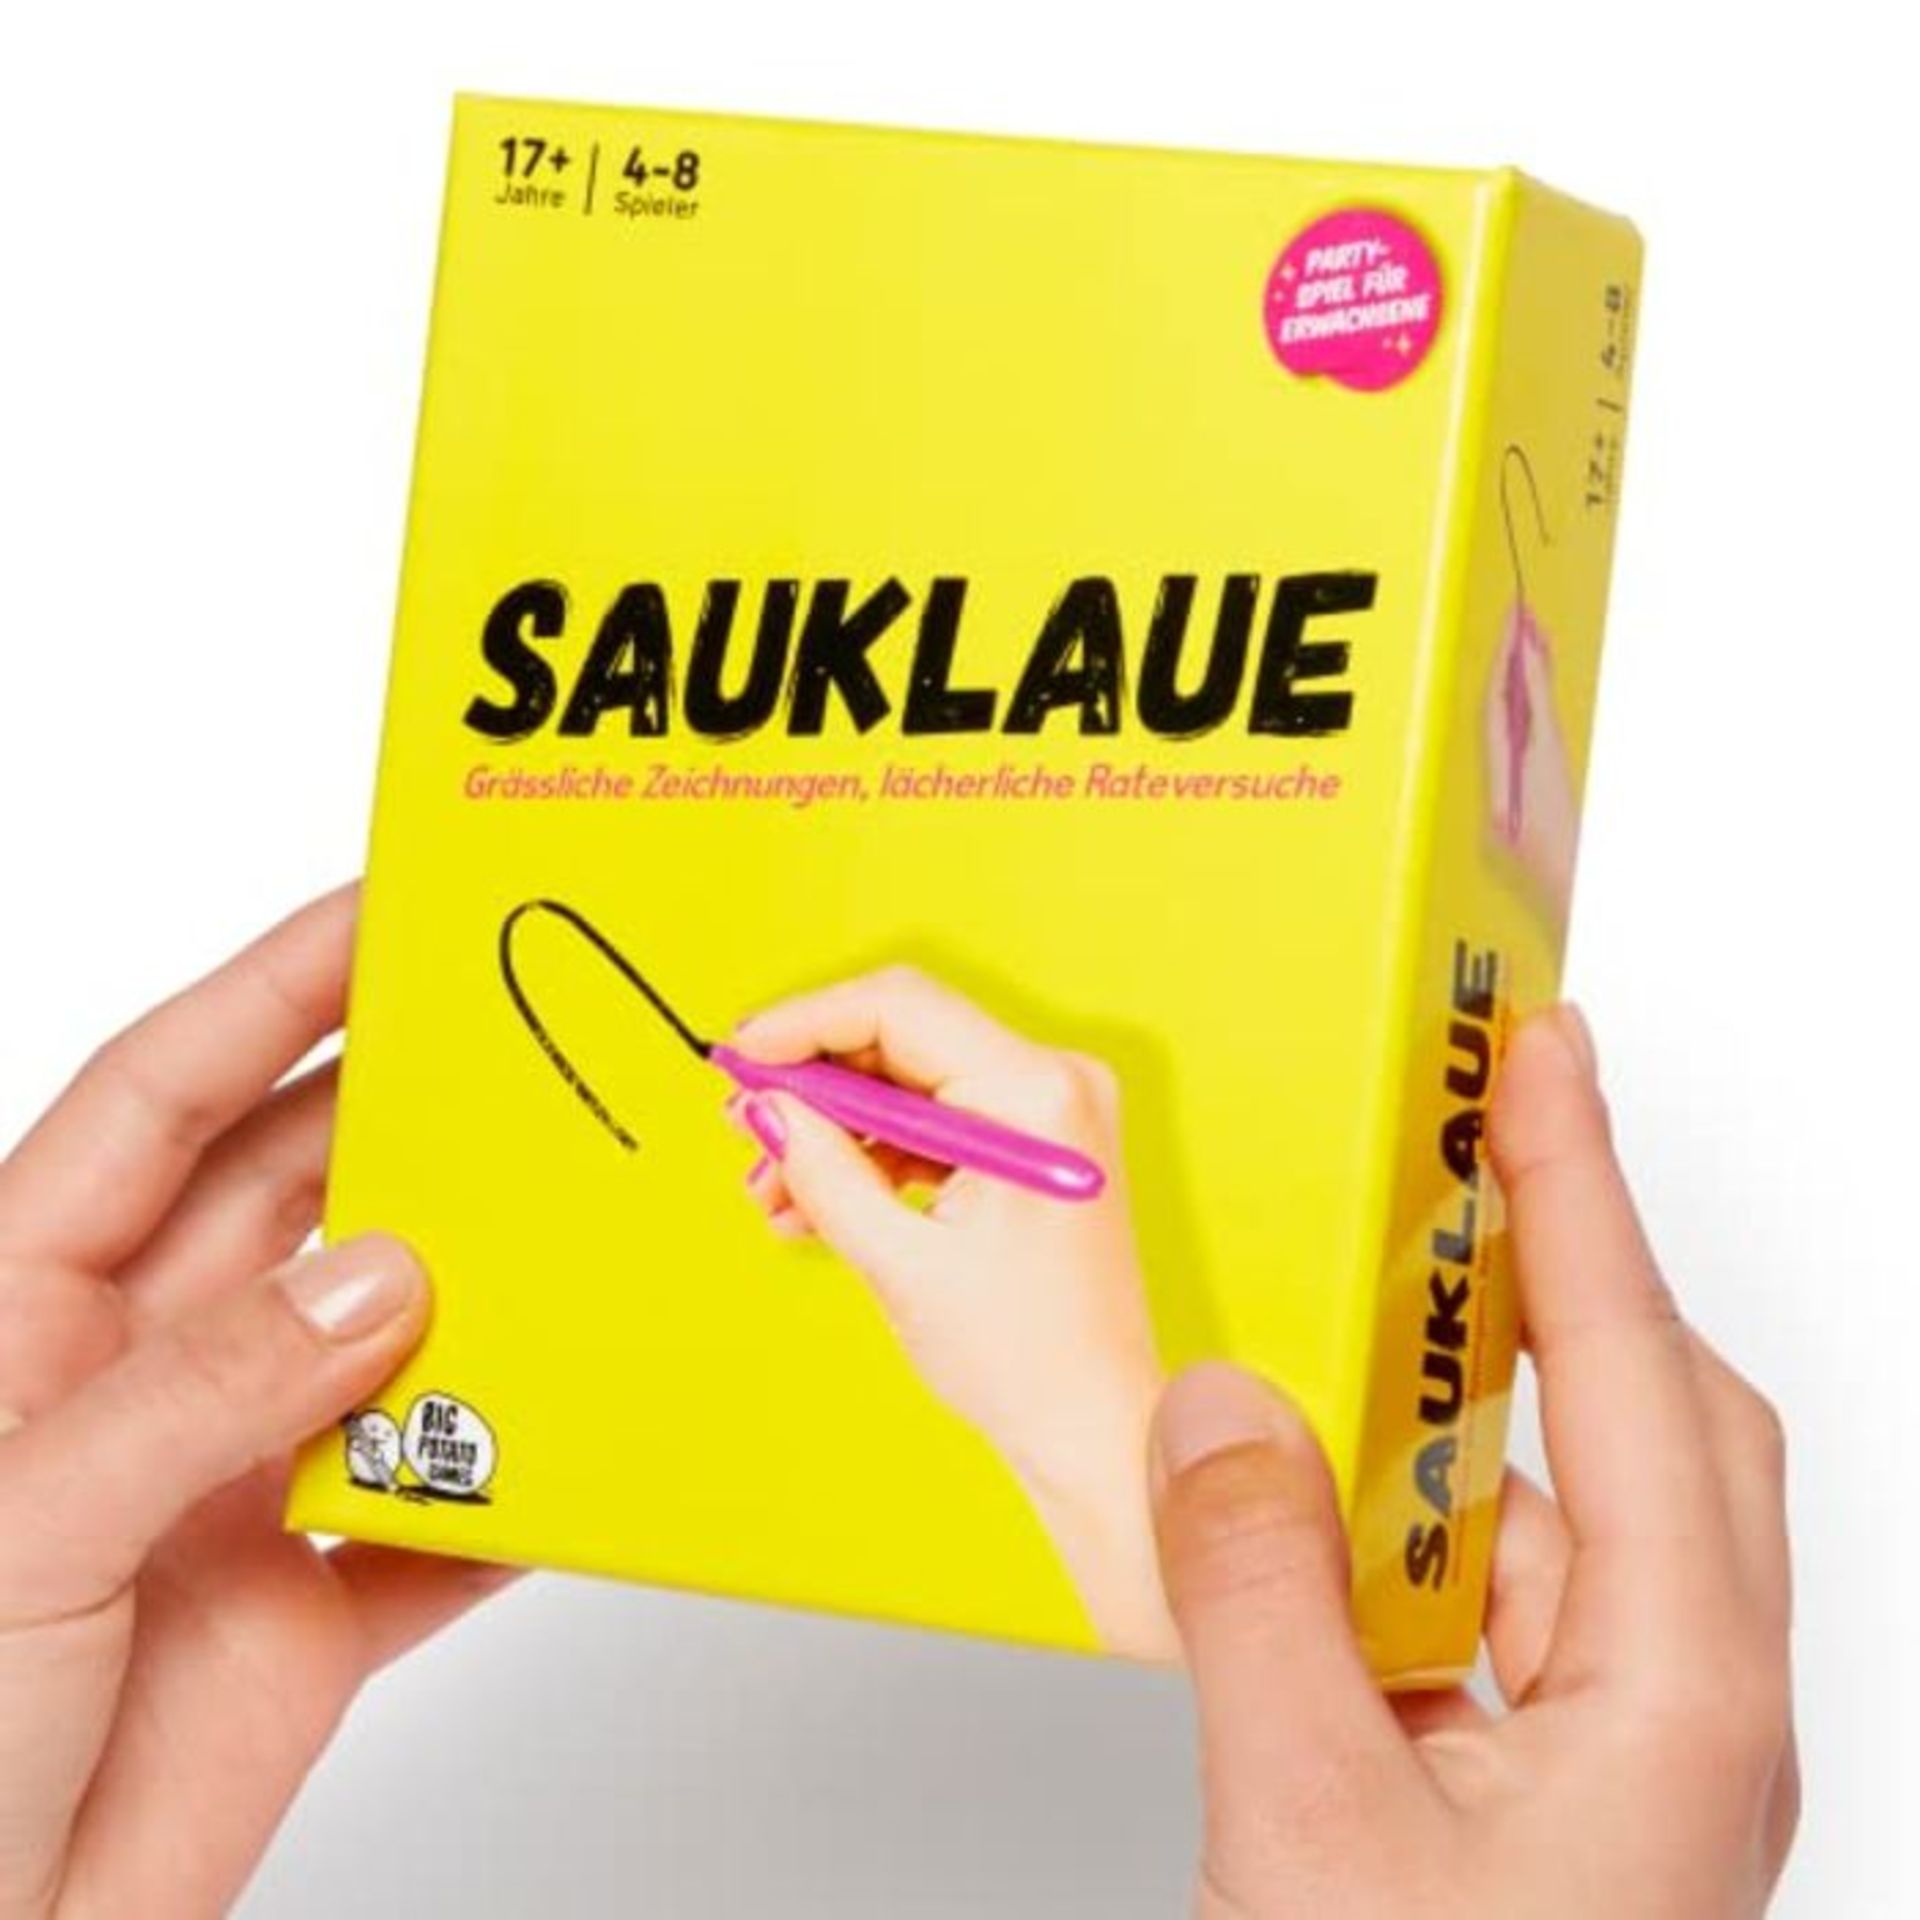 Scrawl DE Version - Sauklaue Adult Board Game | Terrible Drawings and Ridiculous Rate